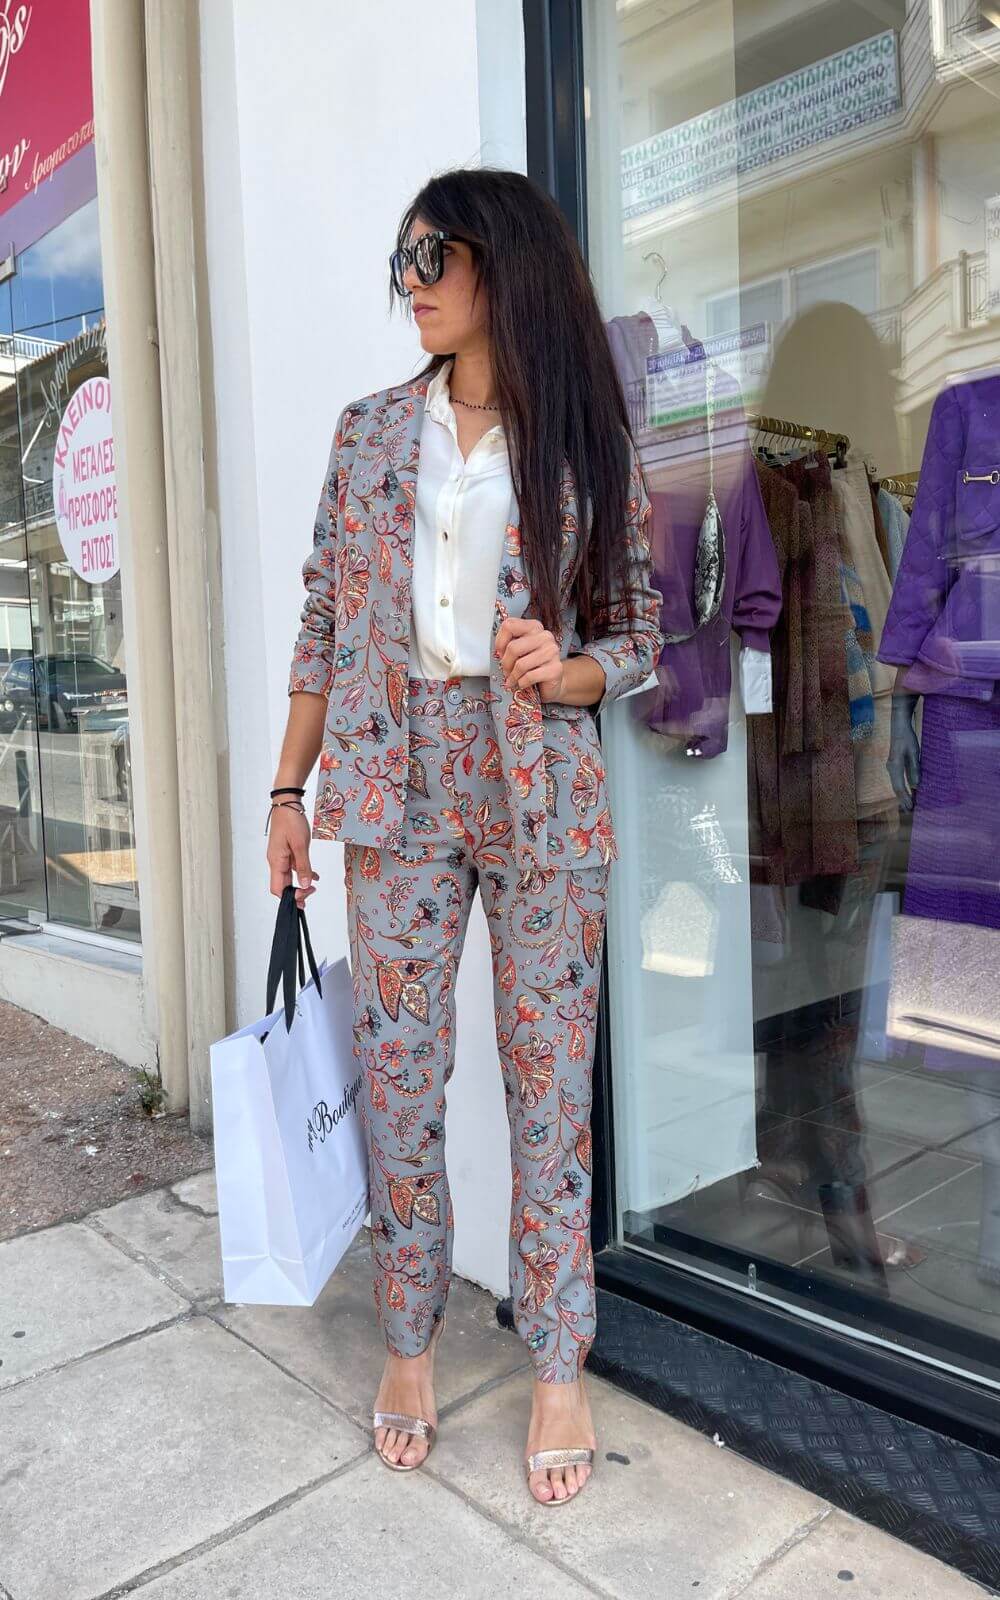 Σετ Γυναικείο Κοστούμι Φλοράλ-My Boutique